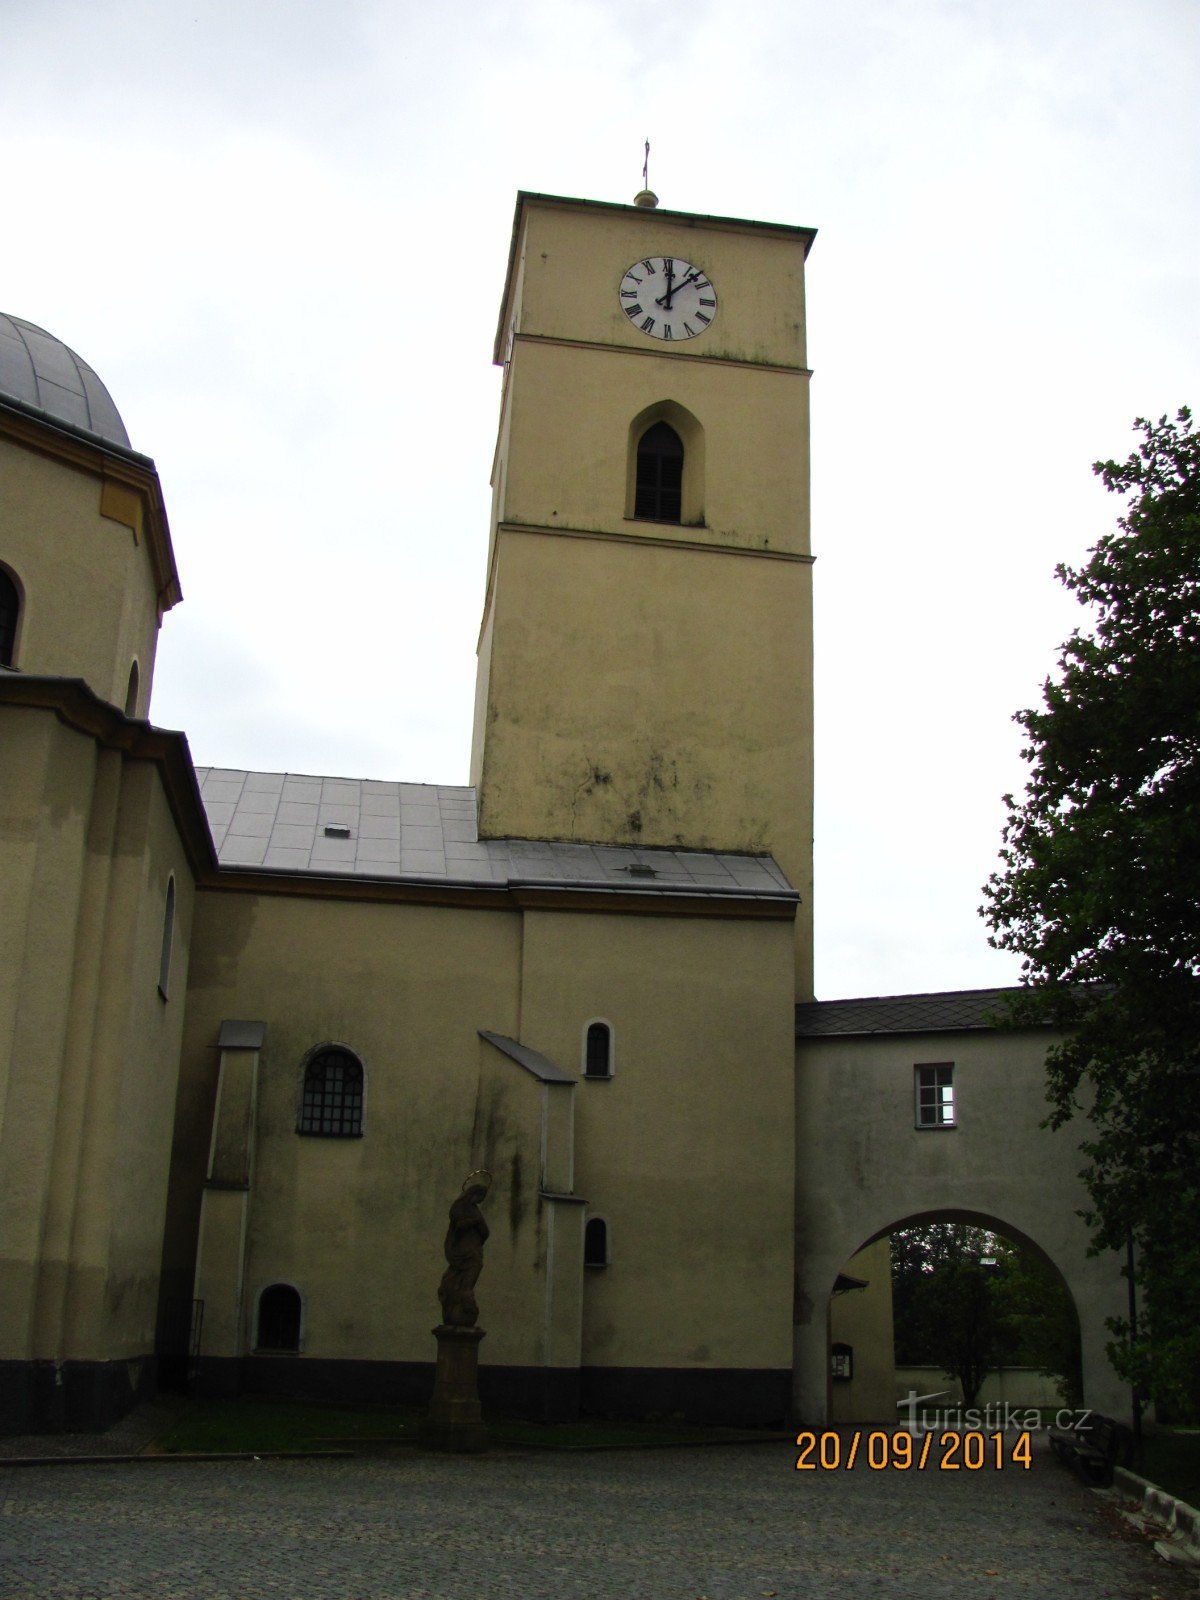 Cerkev sv. Kateřiny v Klimkovicah